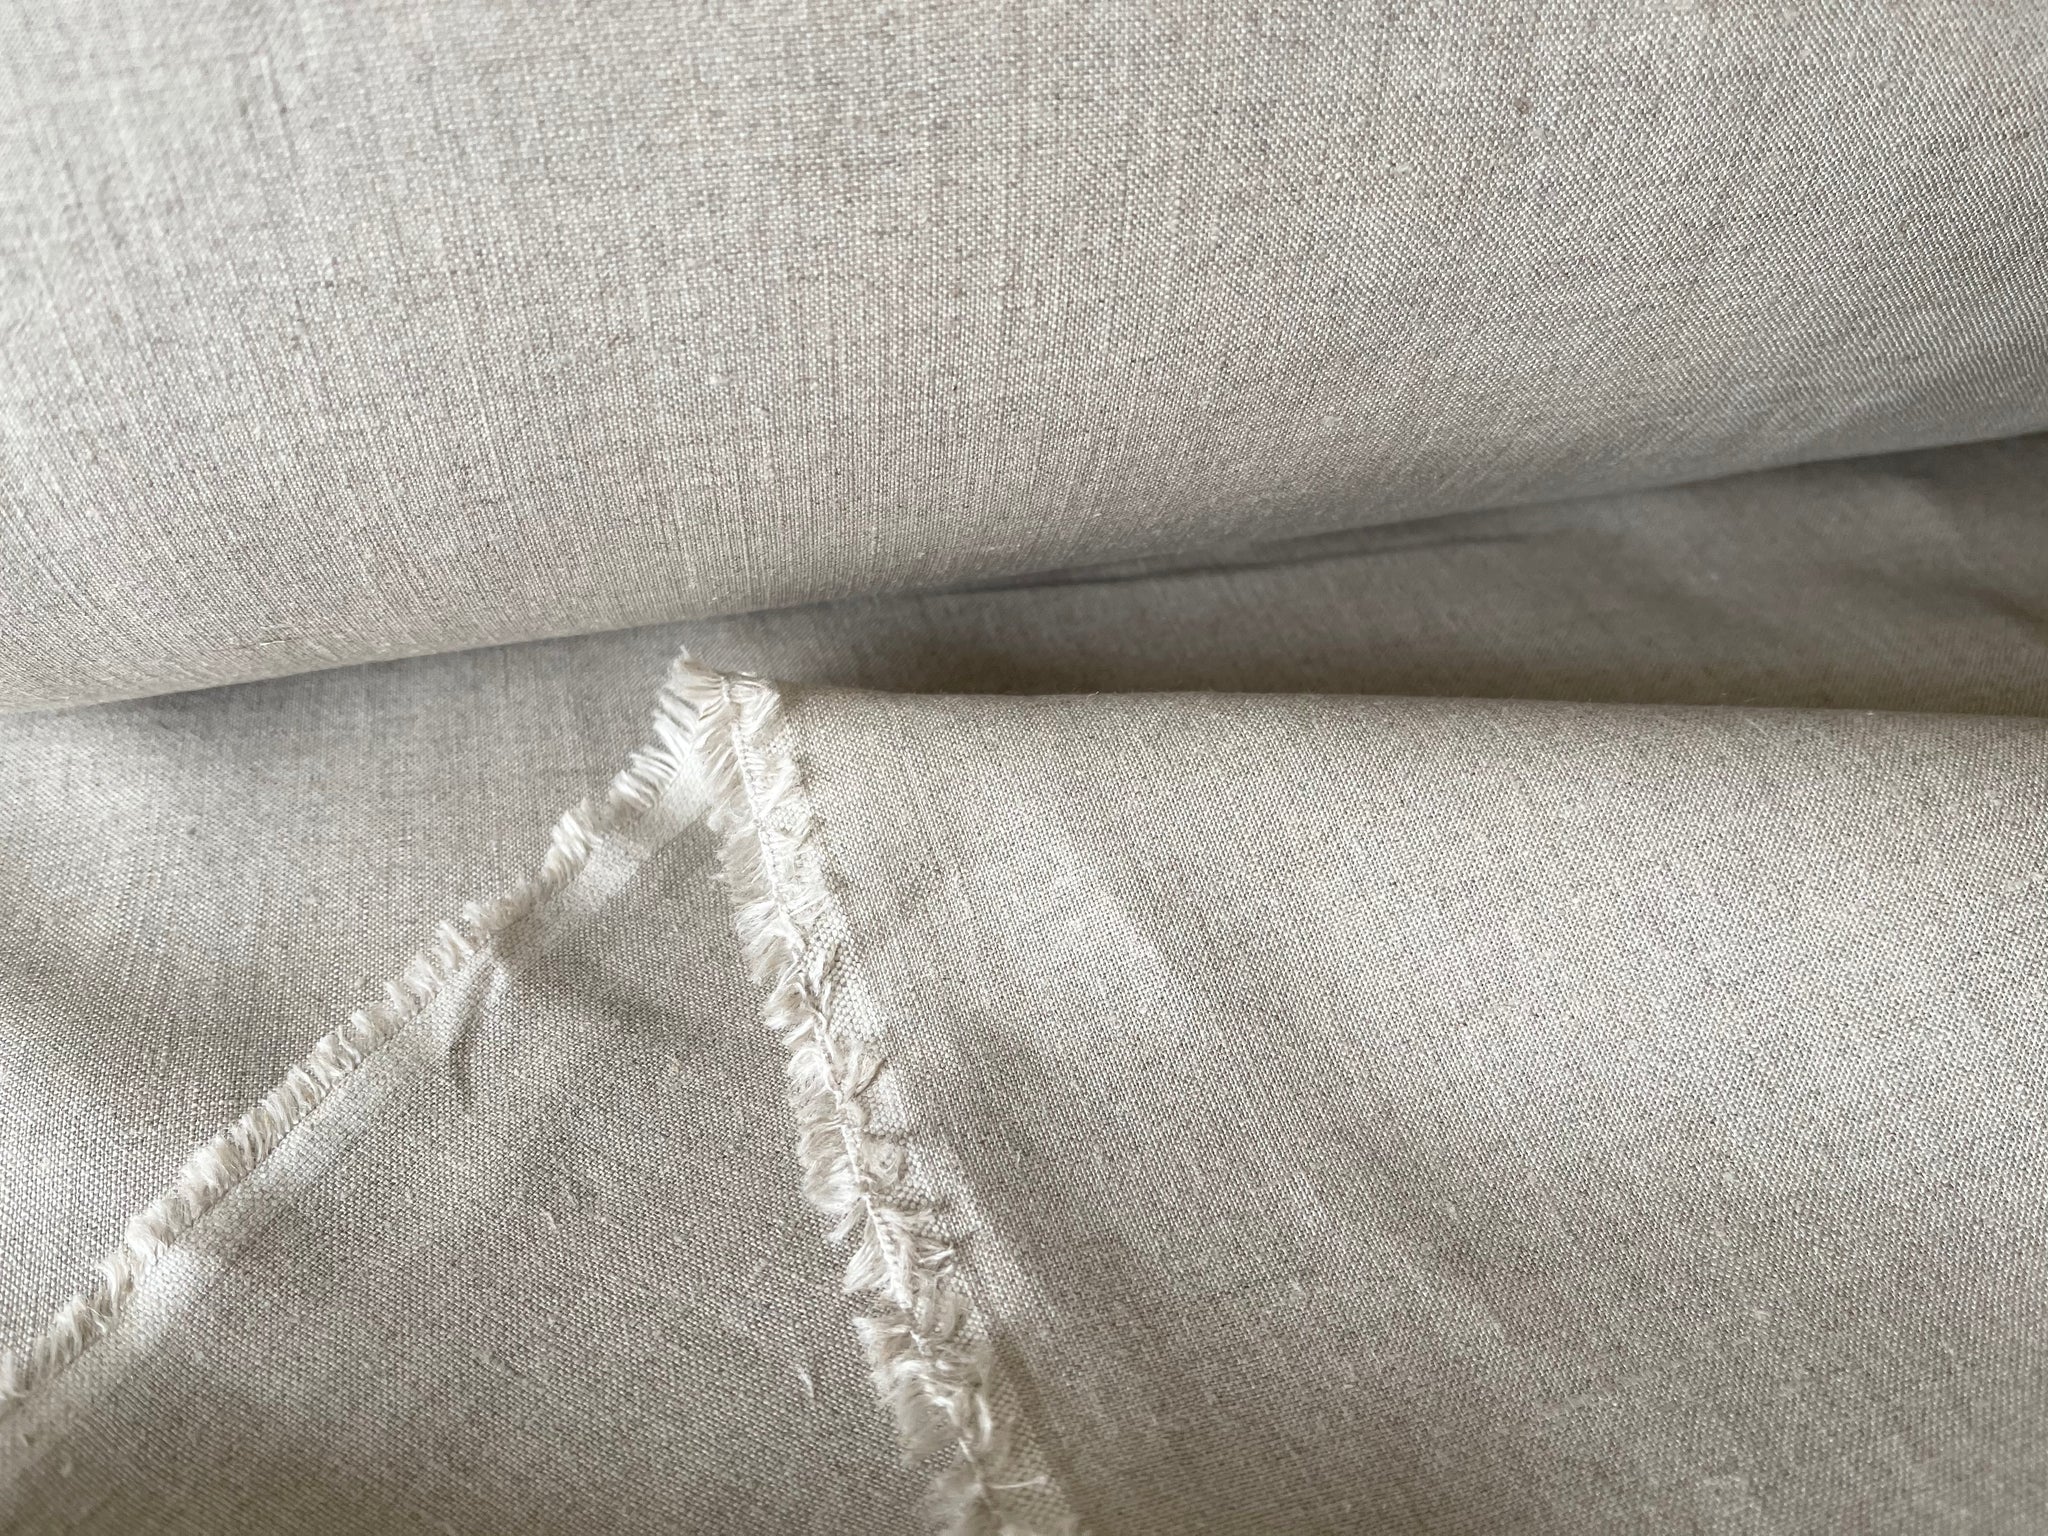 Natural Undyed Linen Fabric - Medium Weight